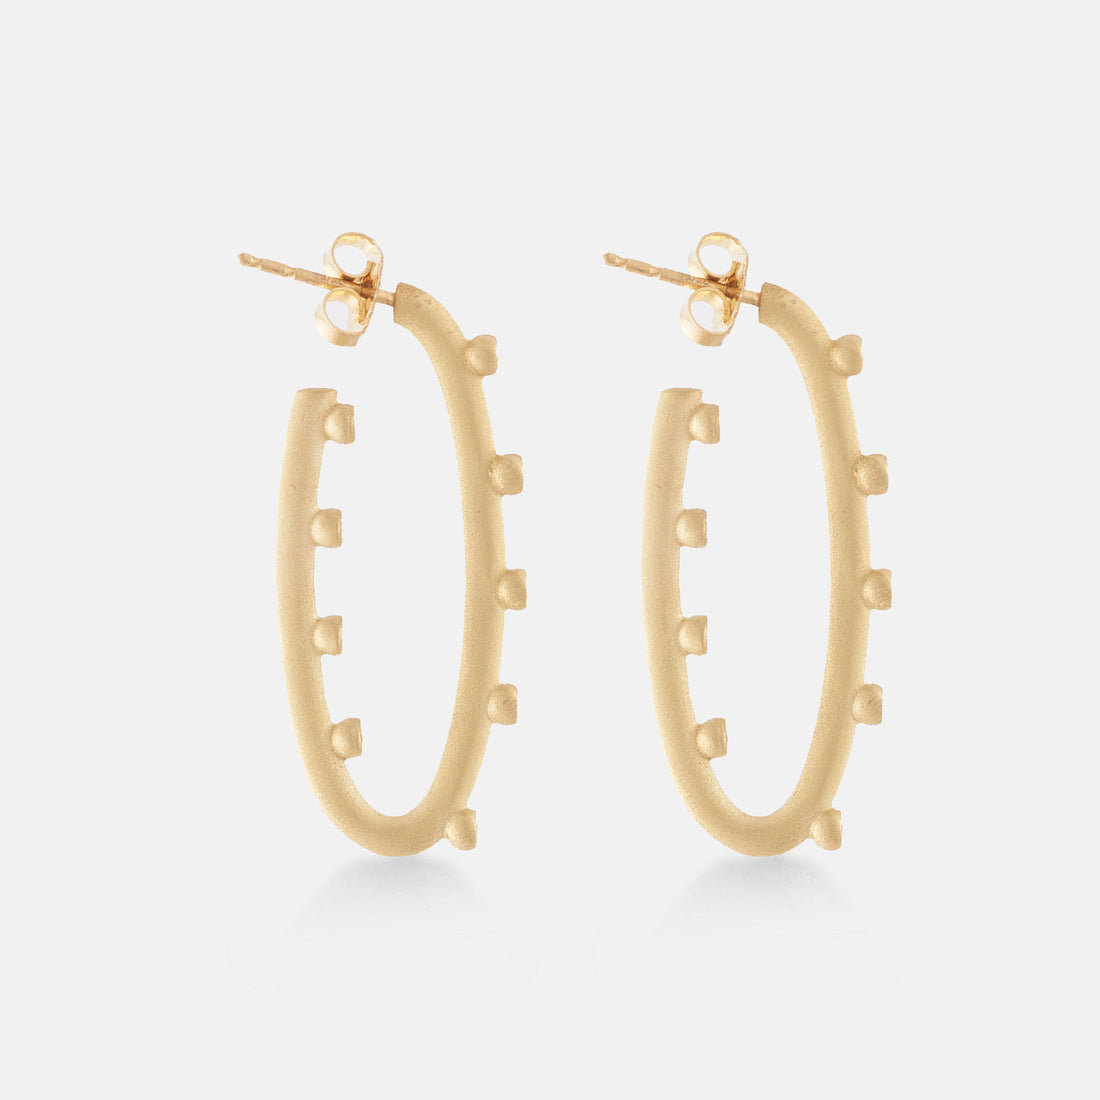 Oval multi-bezel hoop earrings